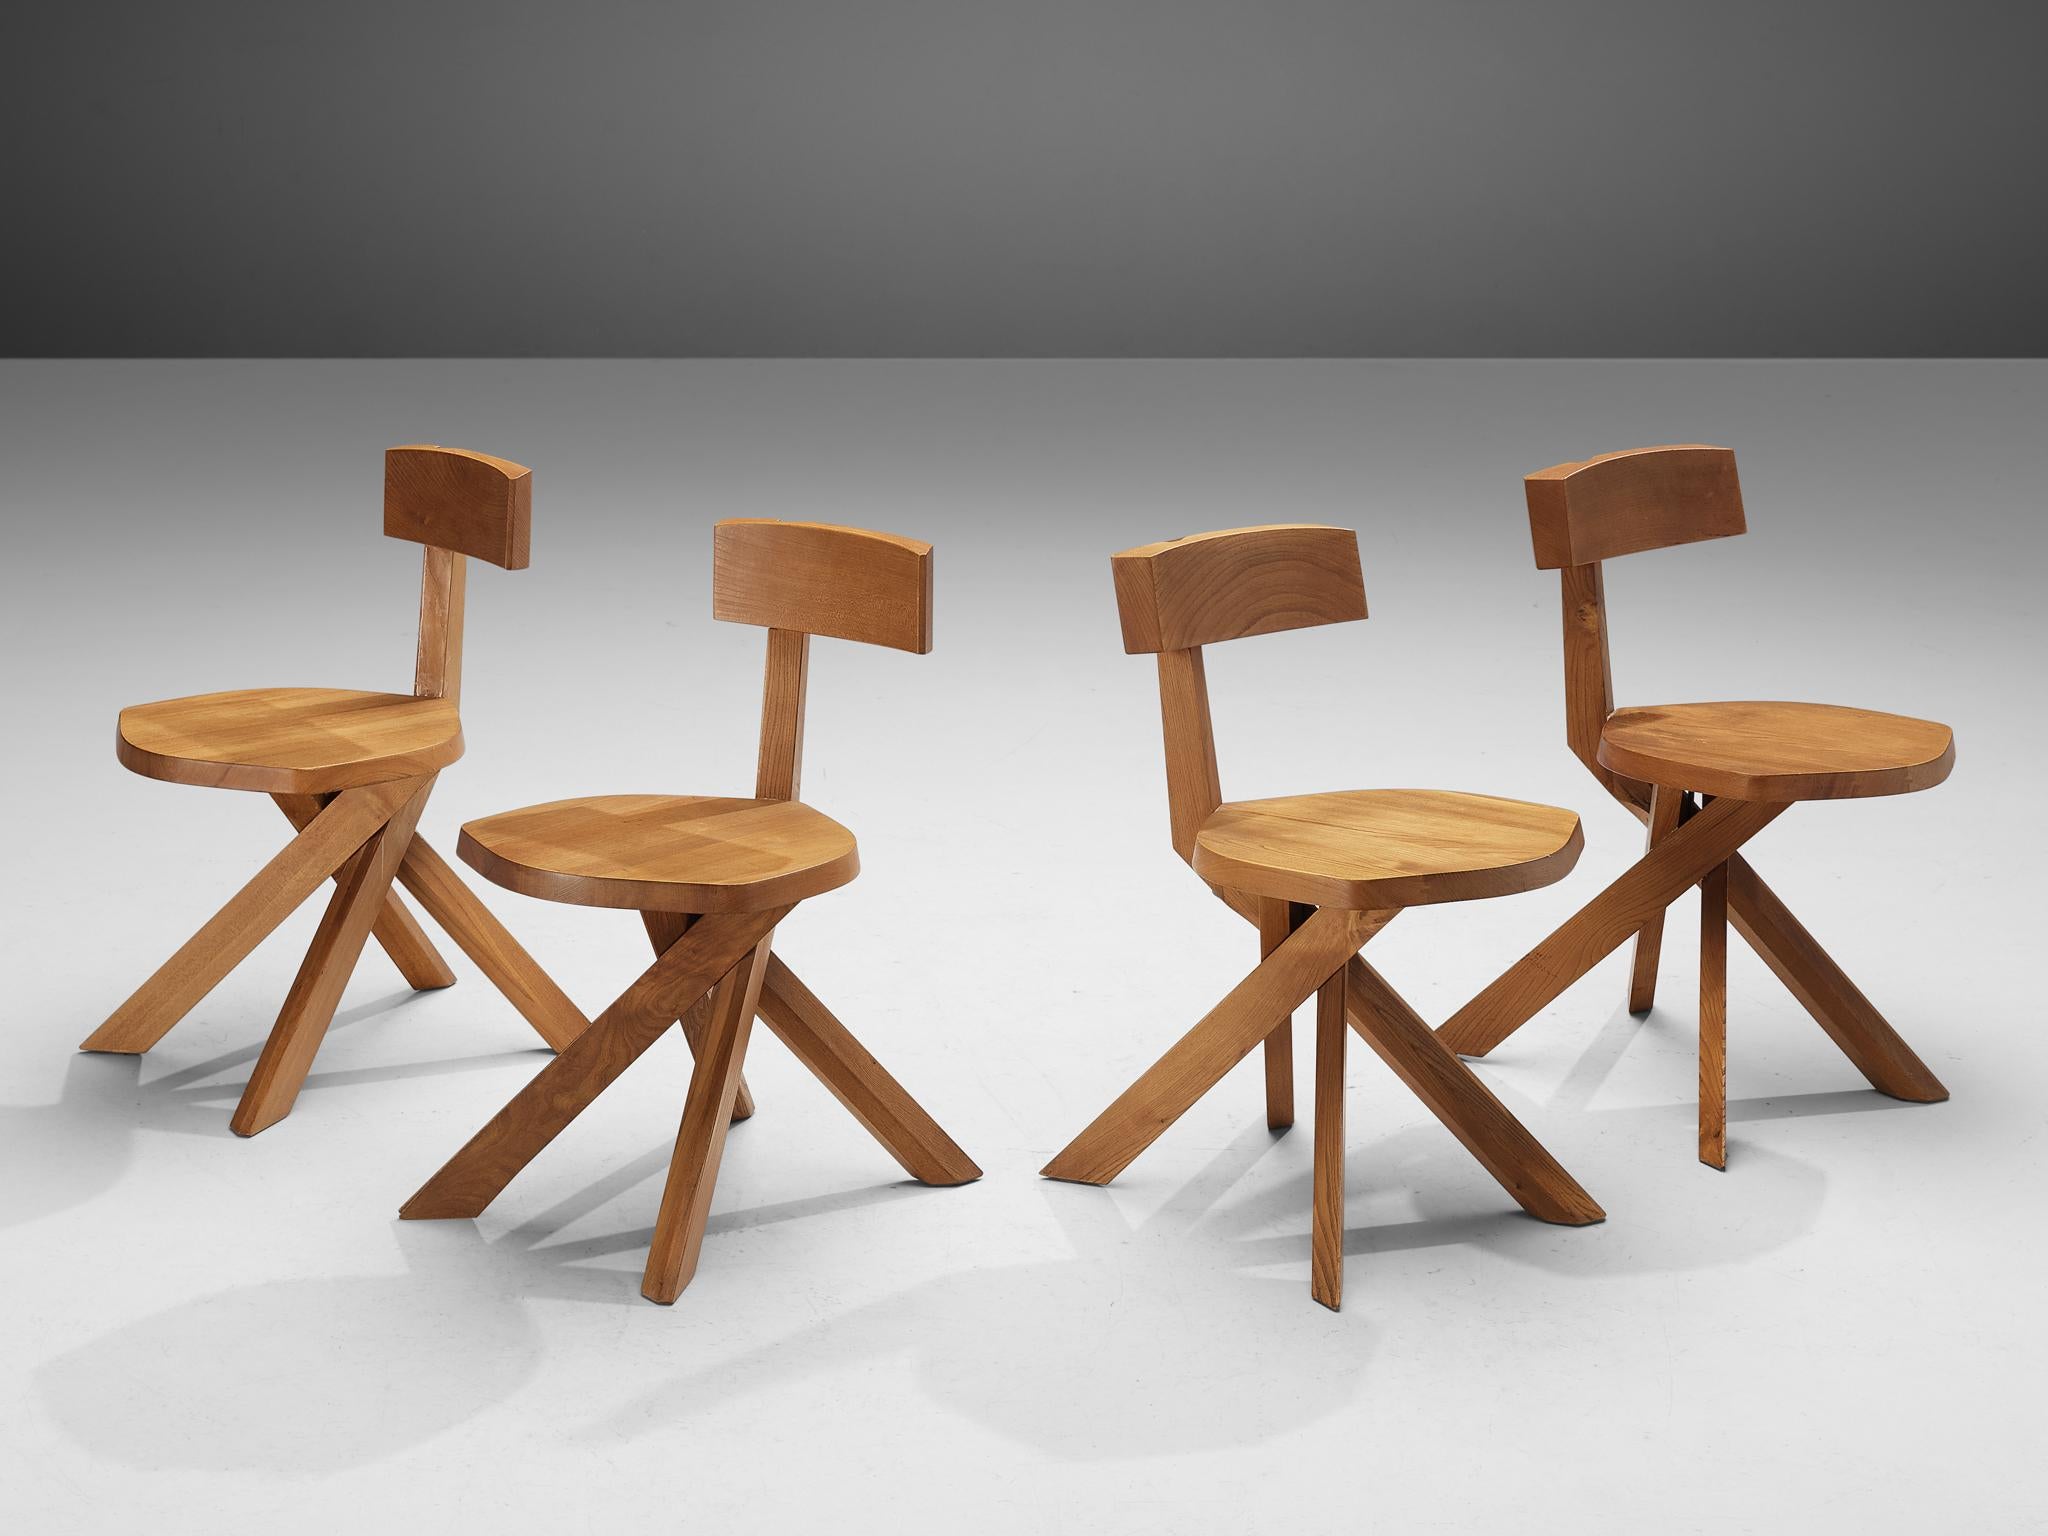 Pierre Chapo, Stühle, Modell 'S34A', Ulme, Frankreich, um 1973 

Dieser Stuhl Modell 'S34A' ist ein Entwurf von Pierre Chapo aus dem Jahr 1973. Dieser asymmetrische Stuhl aus Ulmenholz mit siebenförmiger Rückenlehne und gedrehtem Untergestell ist